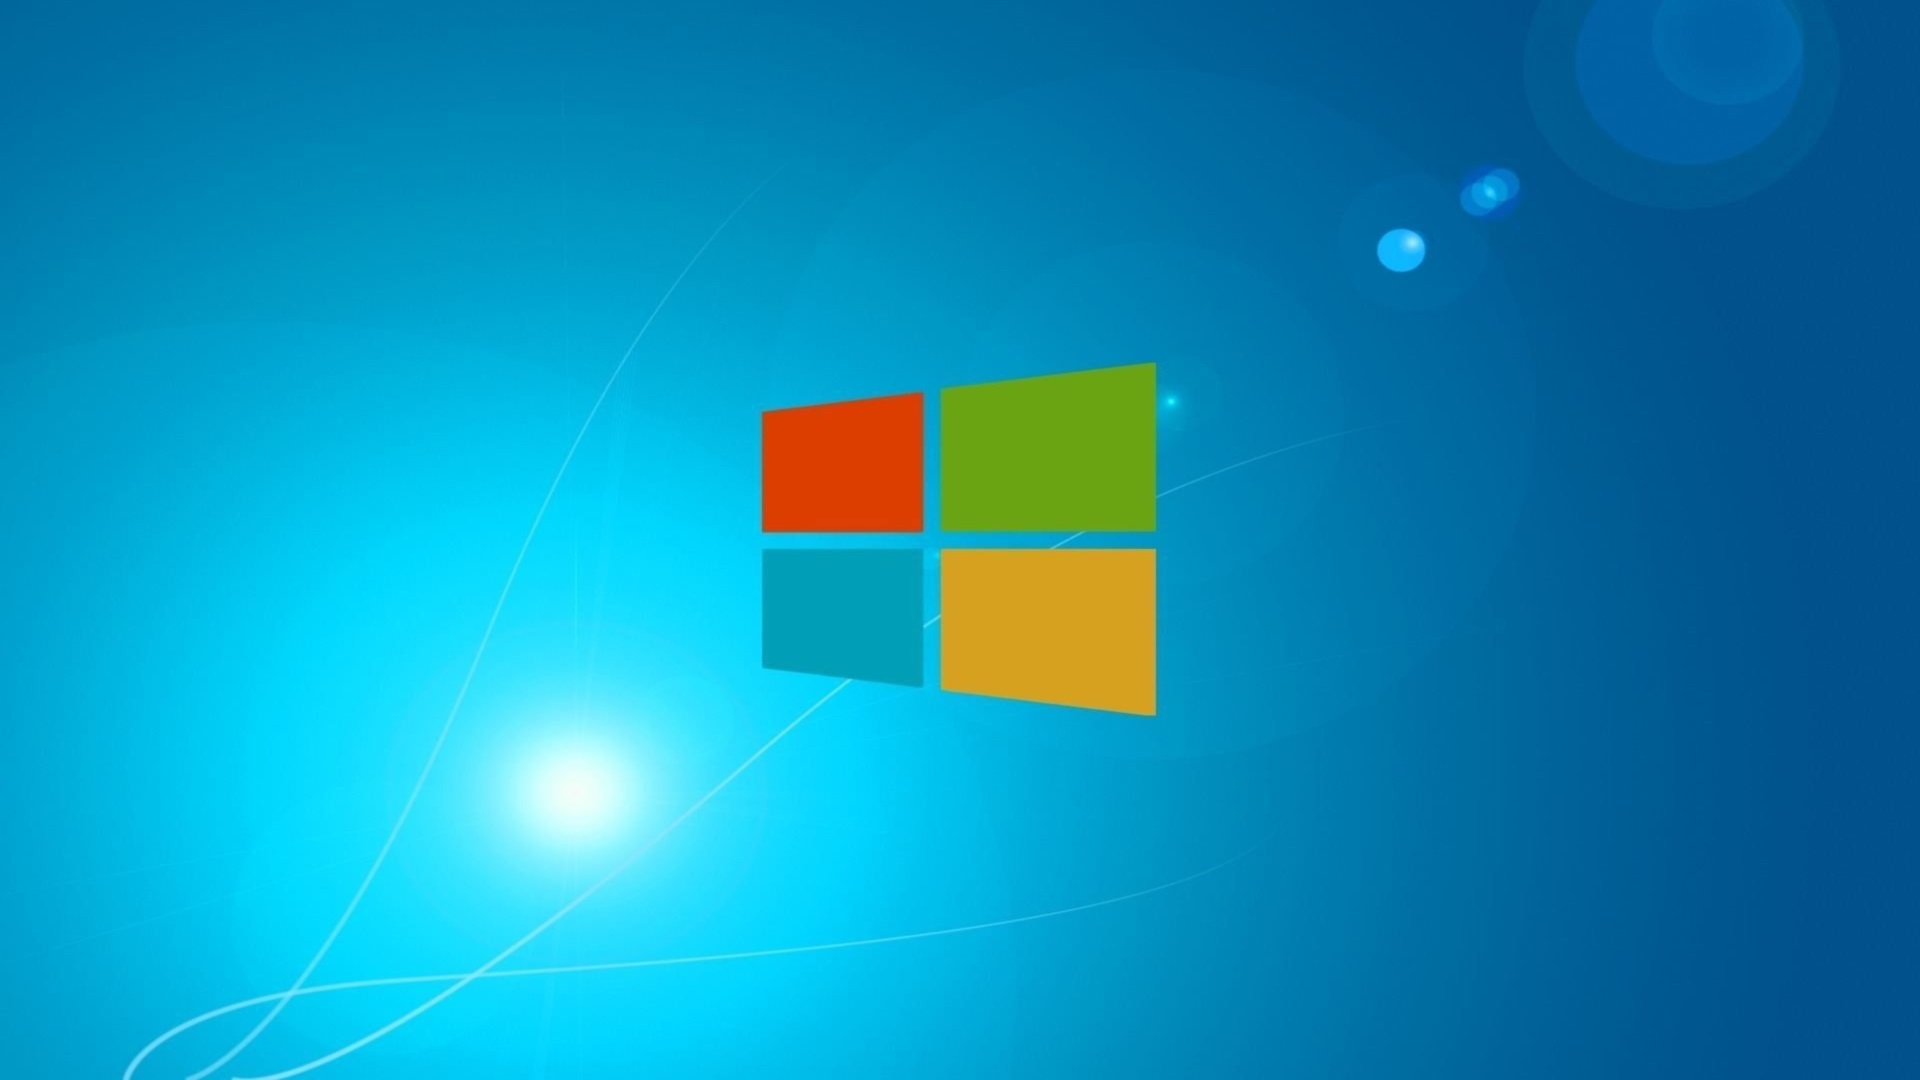 Baixe gratuitamente a imagem Windows 8, Tecnologia, Janelas na área de trabalho do seu PC